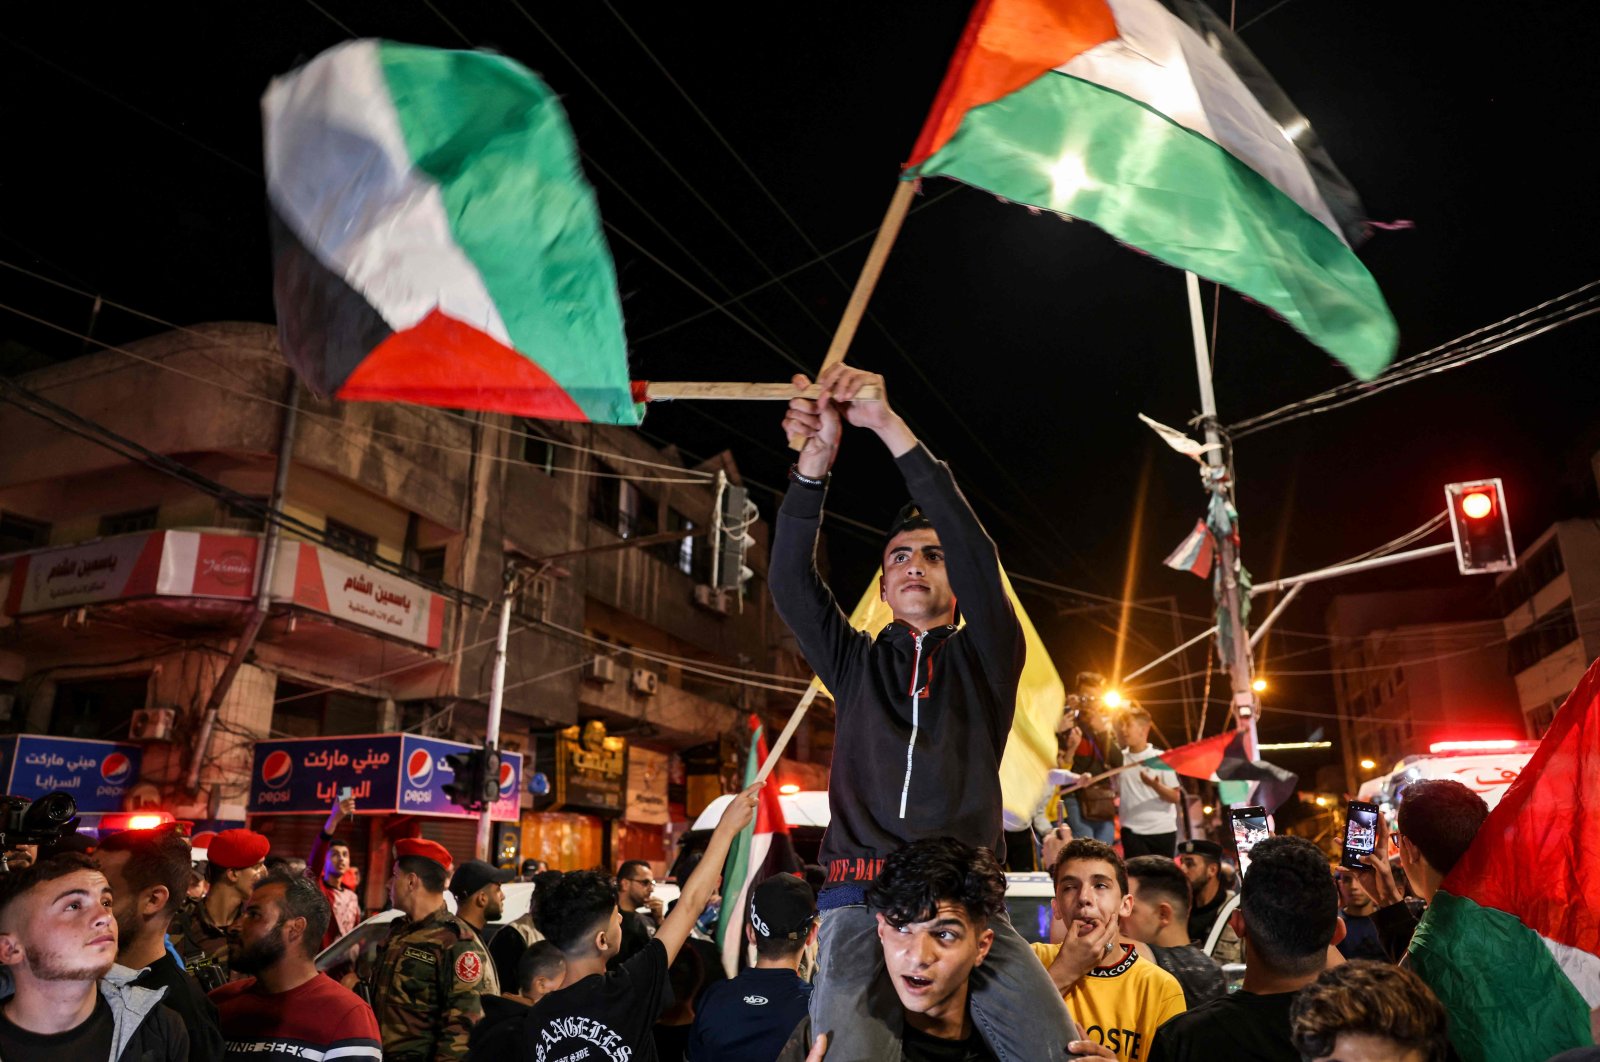 Gencatan senjata Gaza yang lemah berlaku saat Israel, Palestina memecahkan konflik